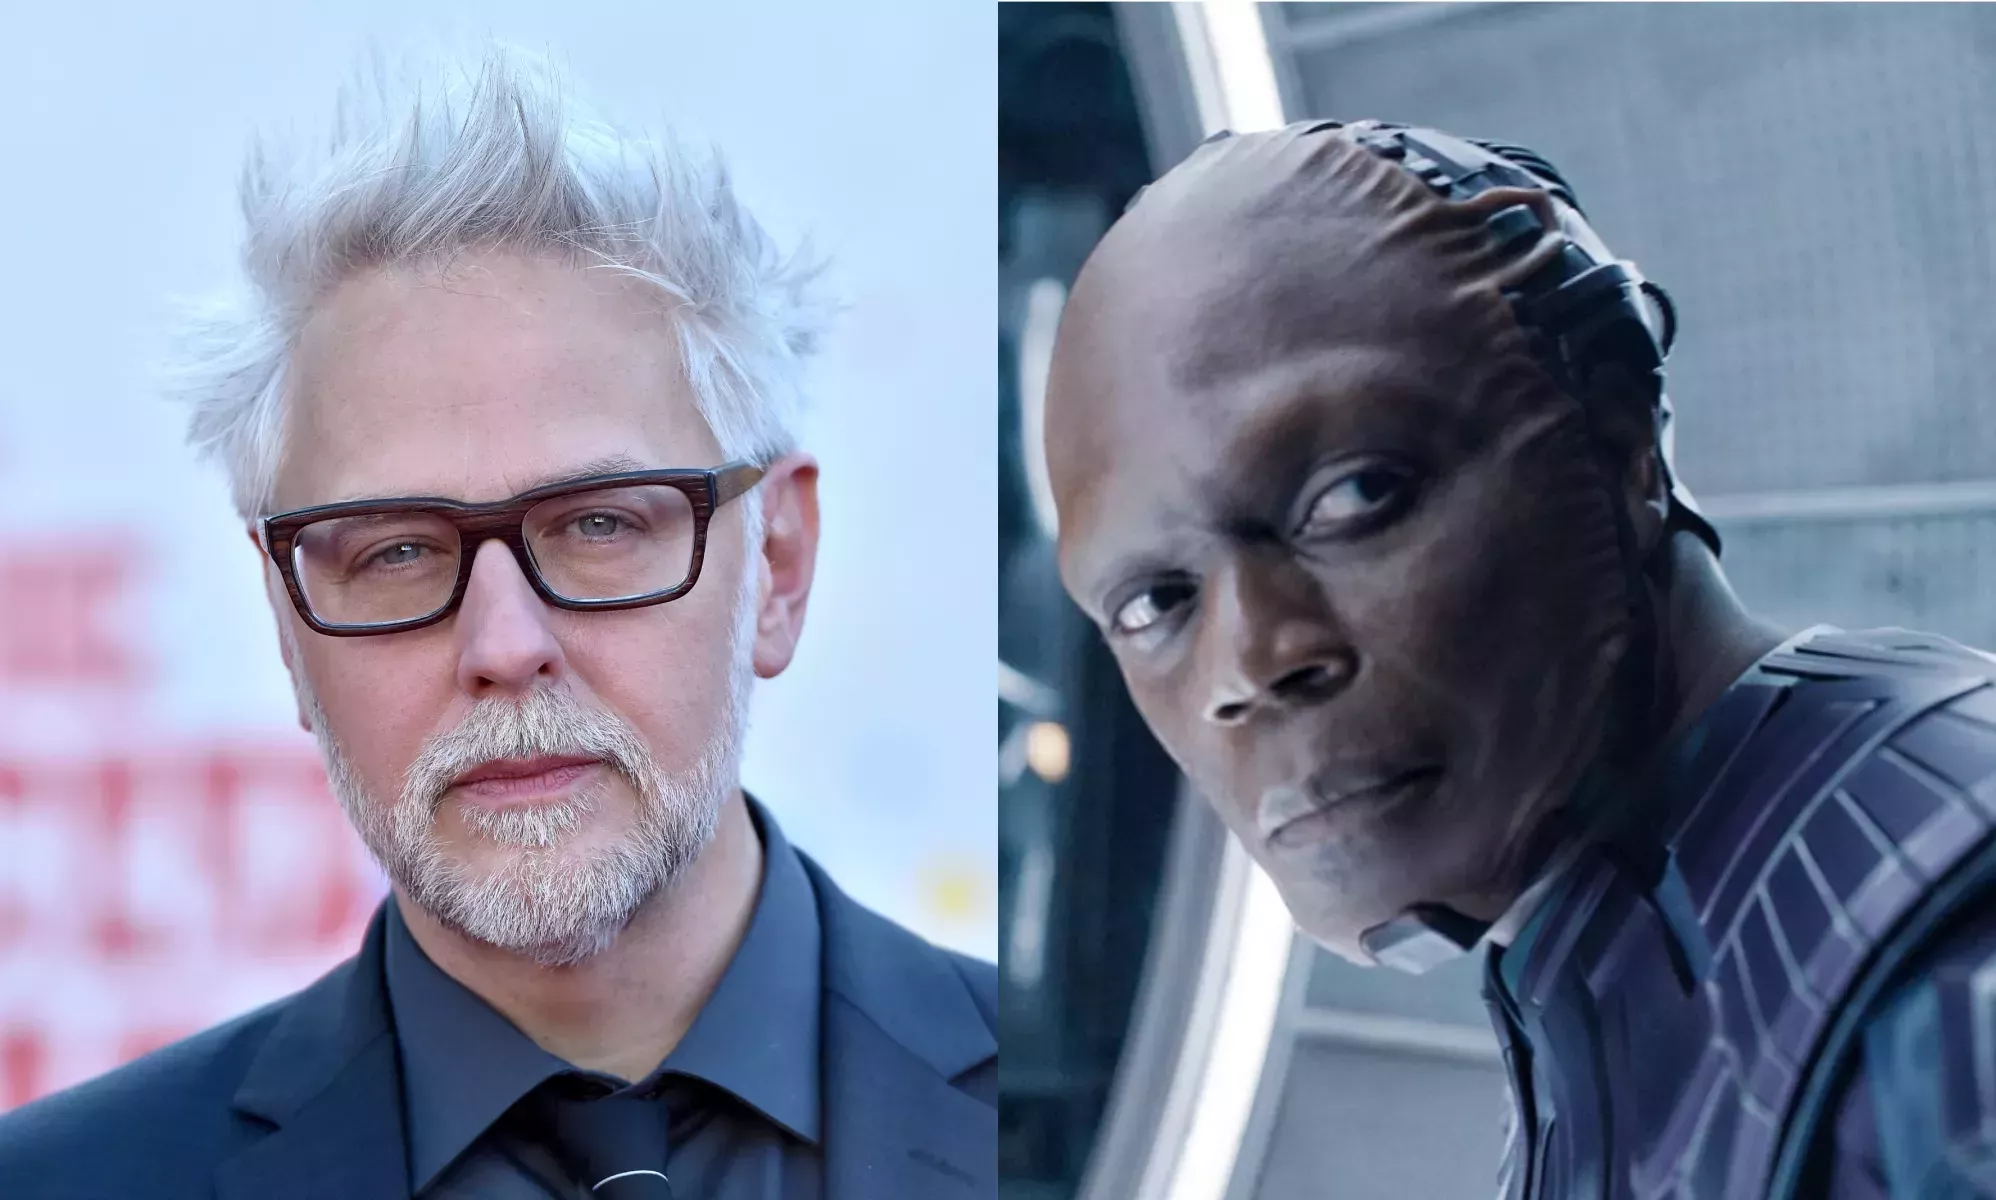 James Gunn arremete contra los trolls tras las reacciones homófobas y racistas por el casting de Guardianes de la Galaxia